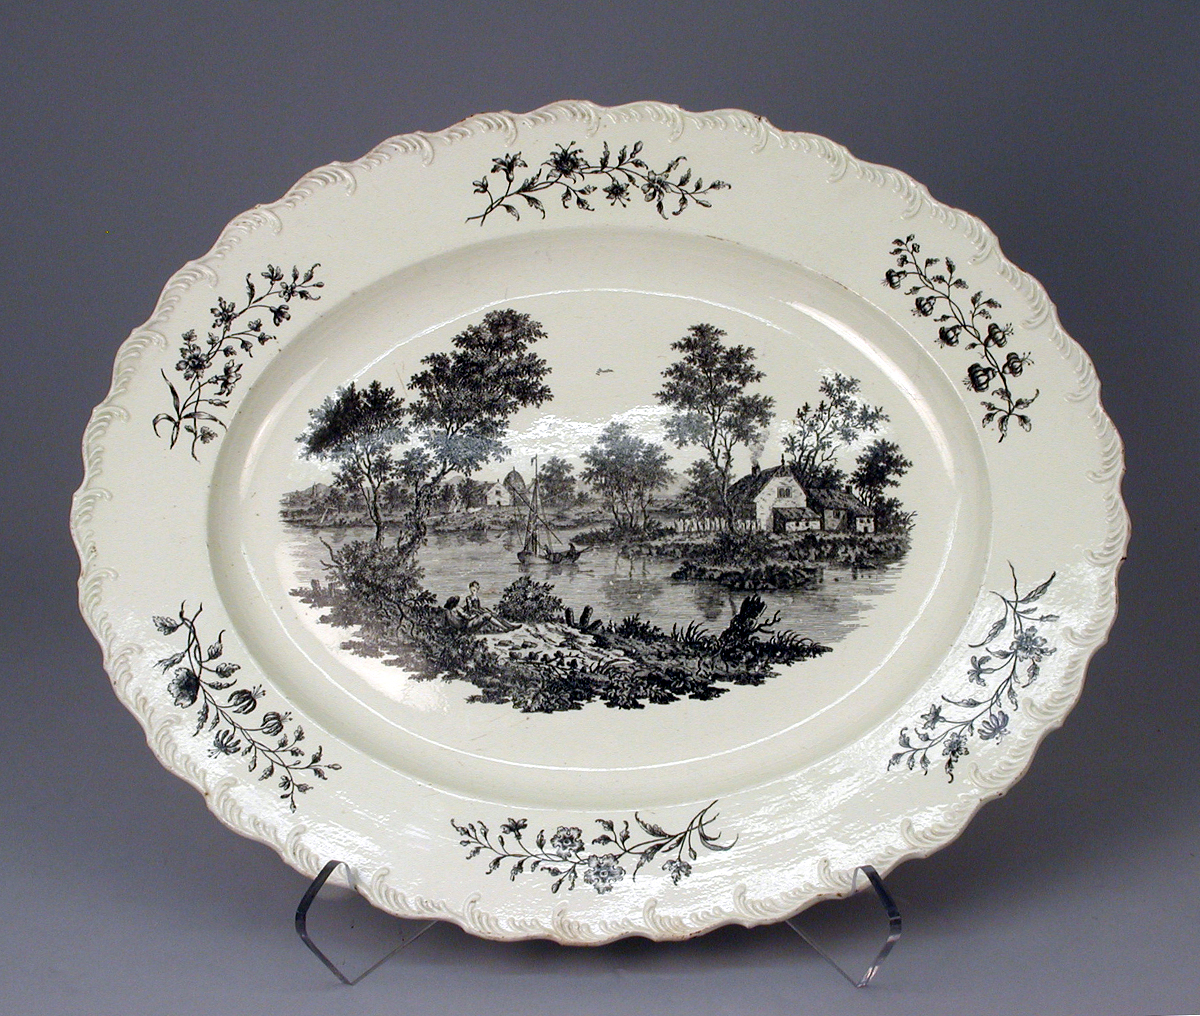 c 1780. Platter. Josiah Wedgwood. Credit metmuseum.org